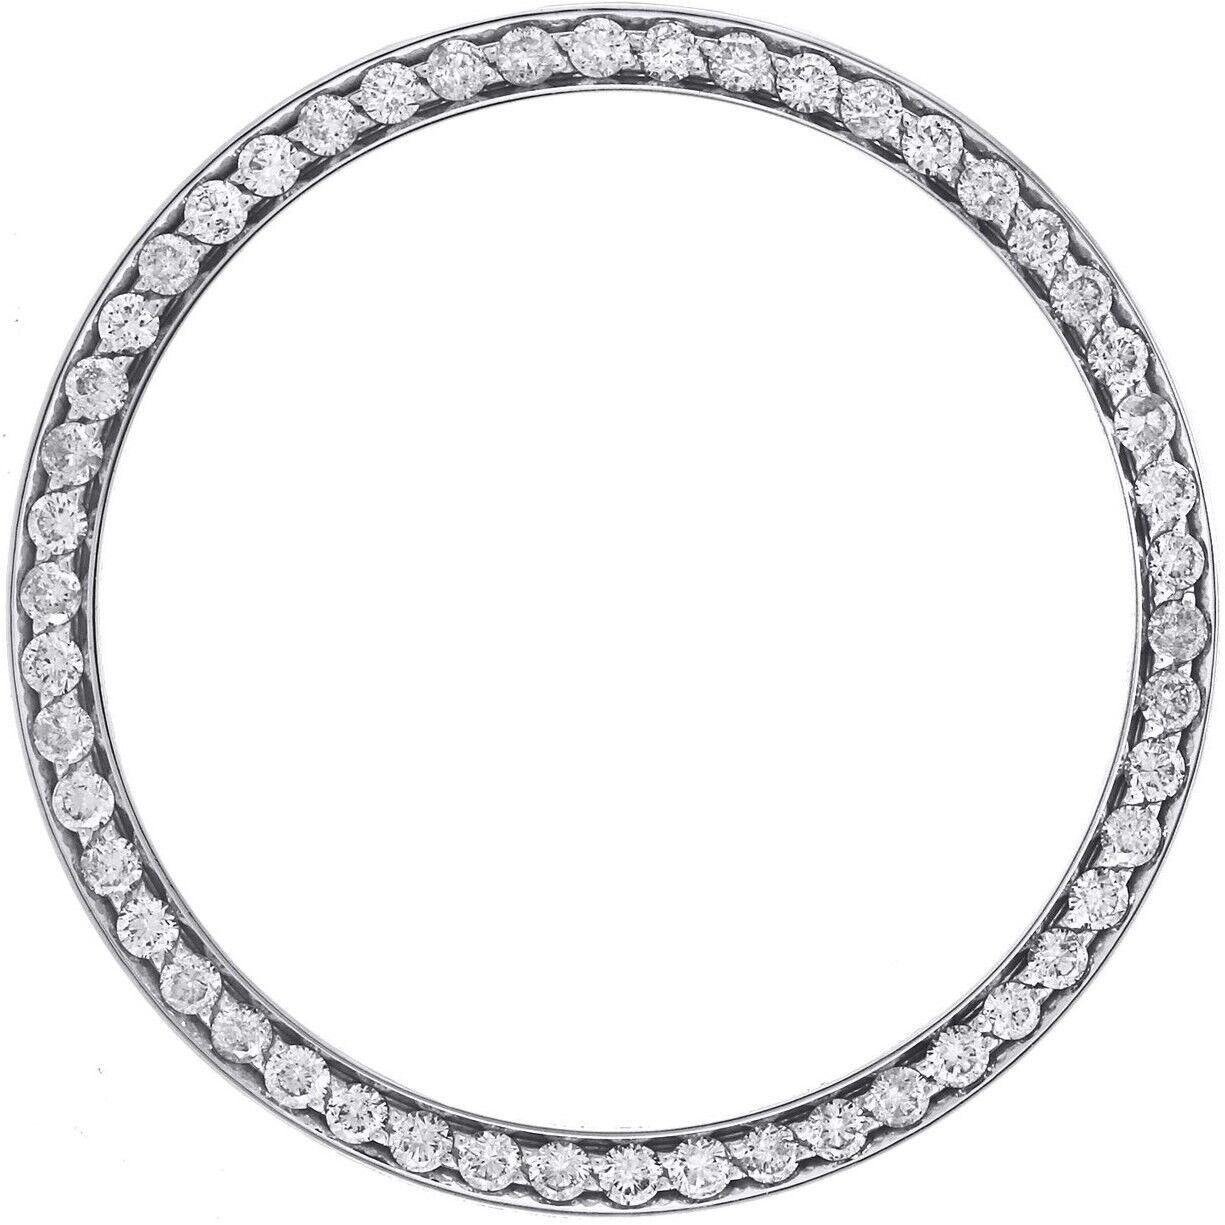 Lunette personnalisée en diamant de 1,30 carat pour les modèles de montres Rolex Datejust 36 mm en acier inoxydable. Cette lunette en diamant est livrée dans une boîte à bijoux en velours.

Environ 1,30 carats de véritables diamants ronds naturels